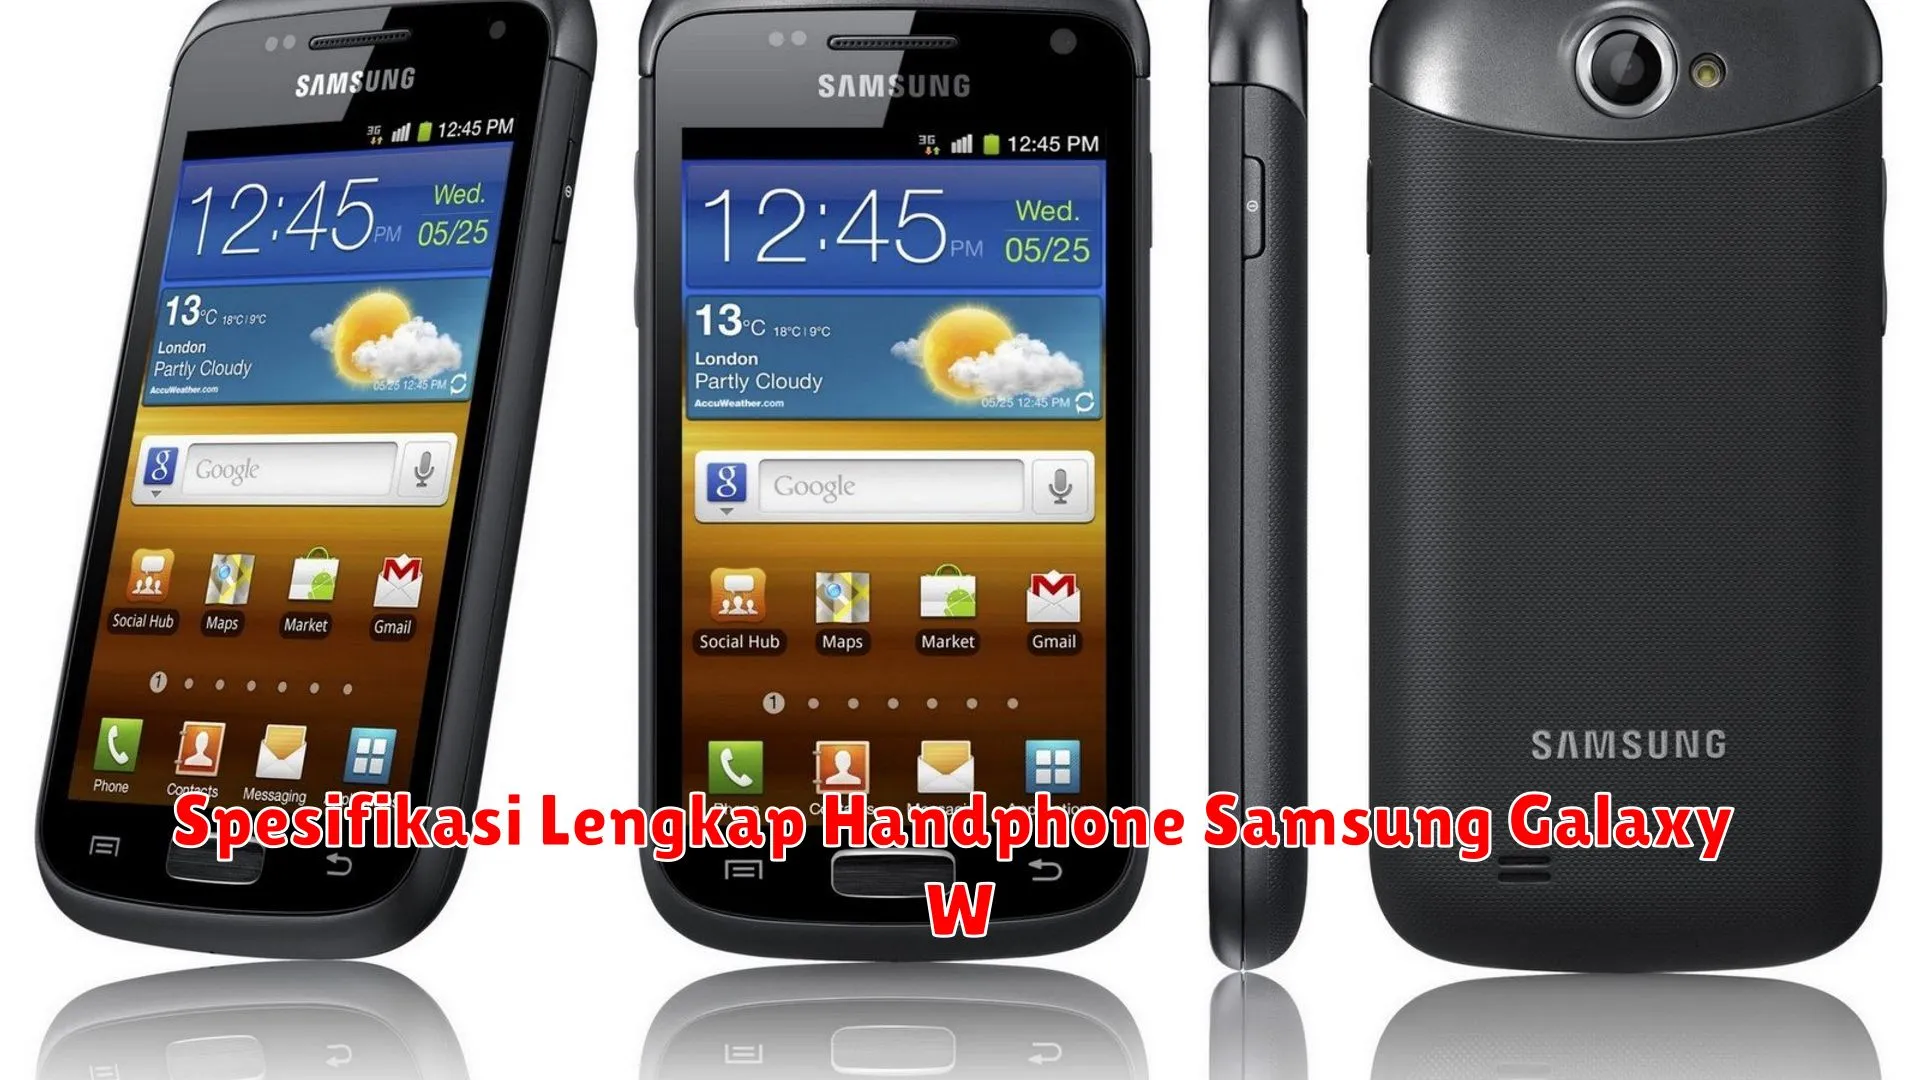 Spesifikasi Lengkap Handphone Samsung Galaxy W